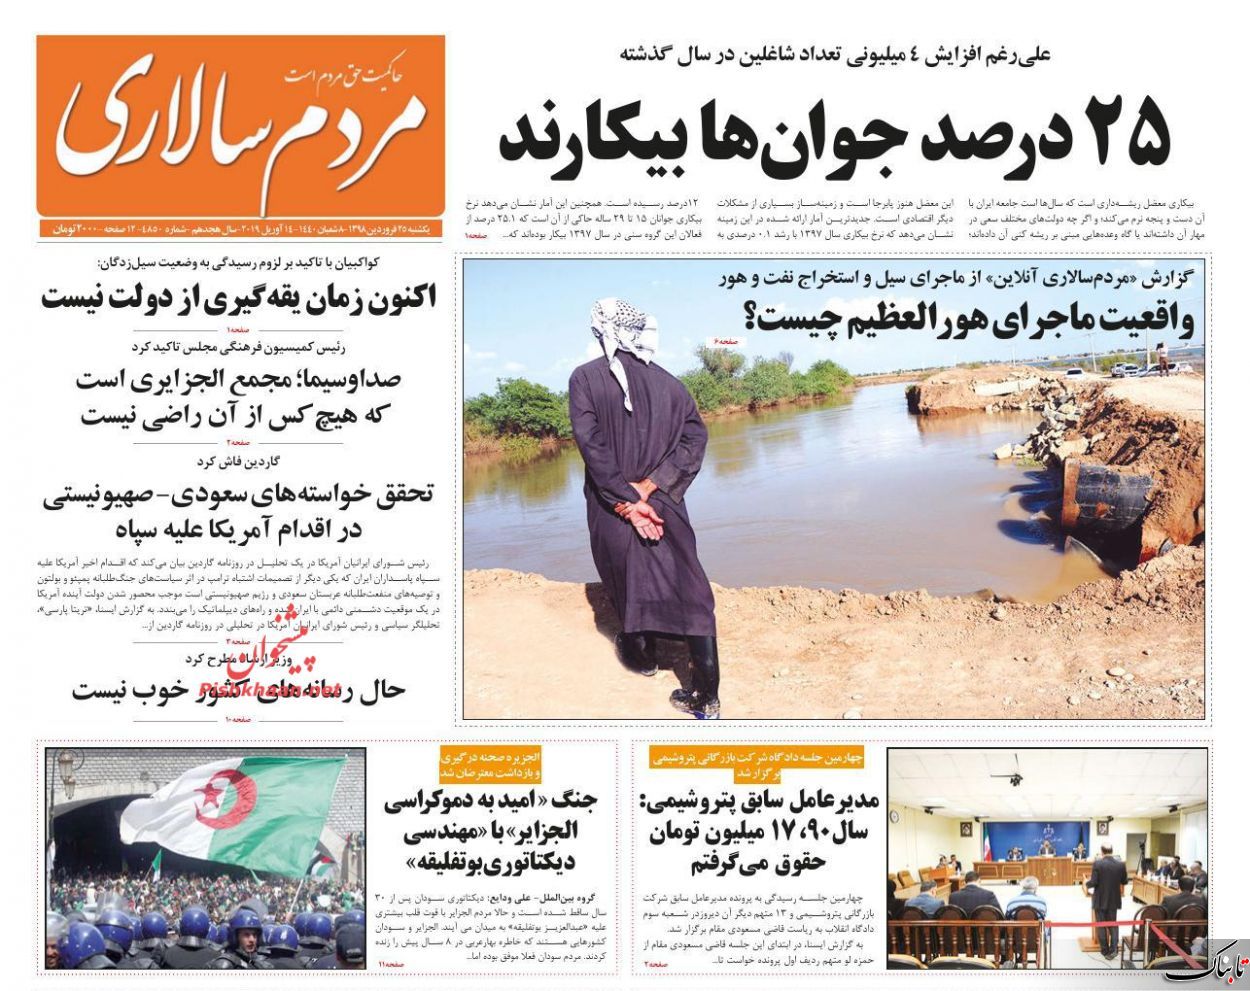 چرا باید خوزستان چنین دچار بحران و ناکارآمدی مدیریتی شود؟! /چیستی سیاست آمریکا در مقابله با سپاه/آیا فصل دوم «بهار عربی» در راه است؟